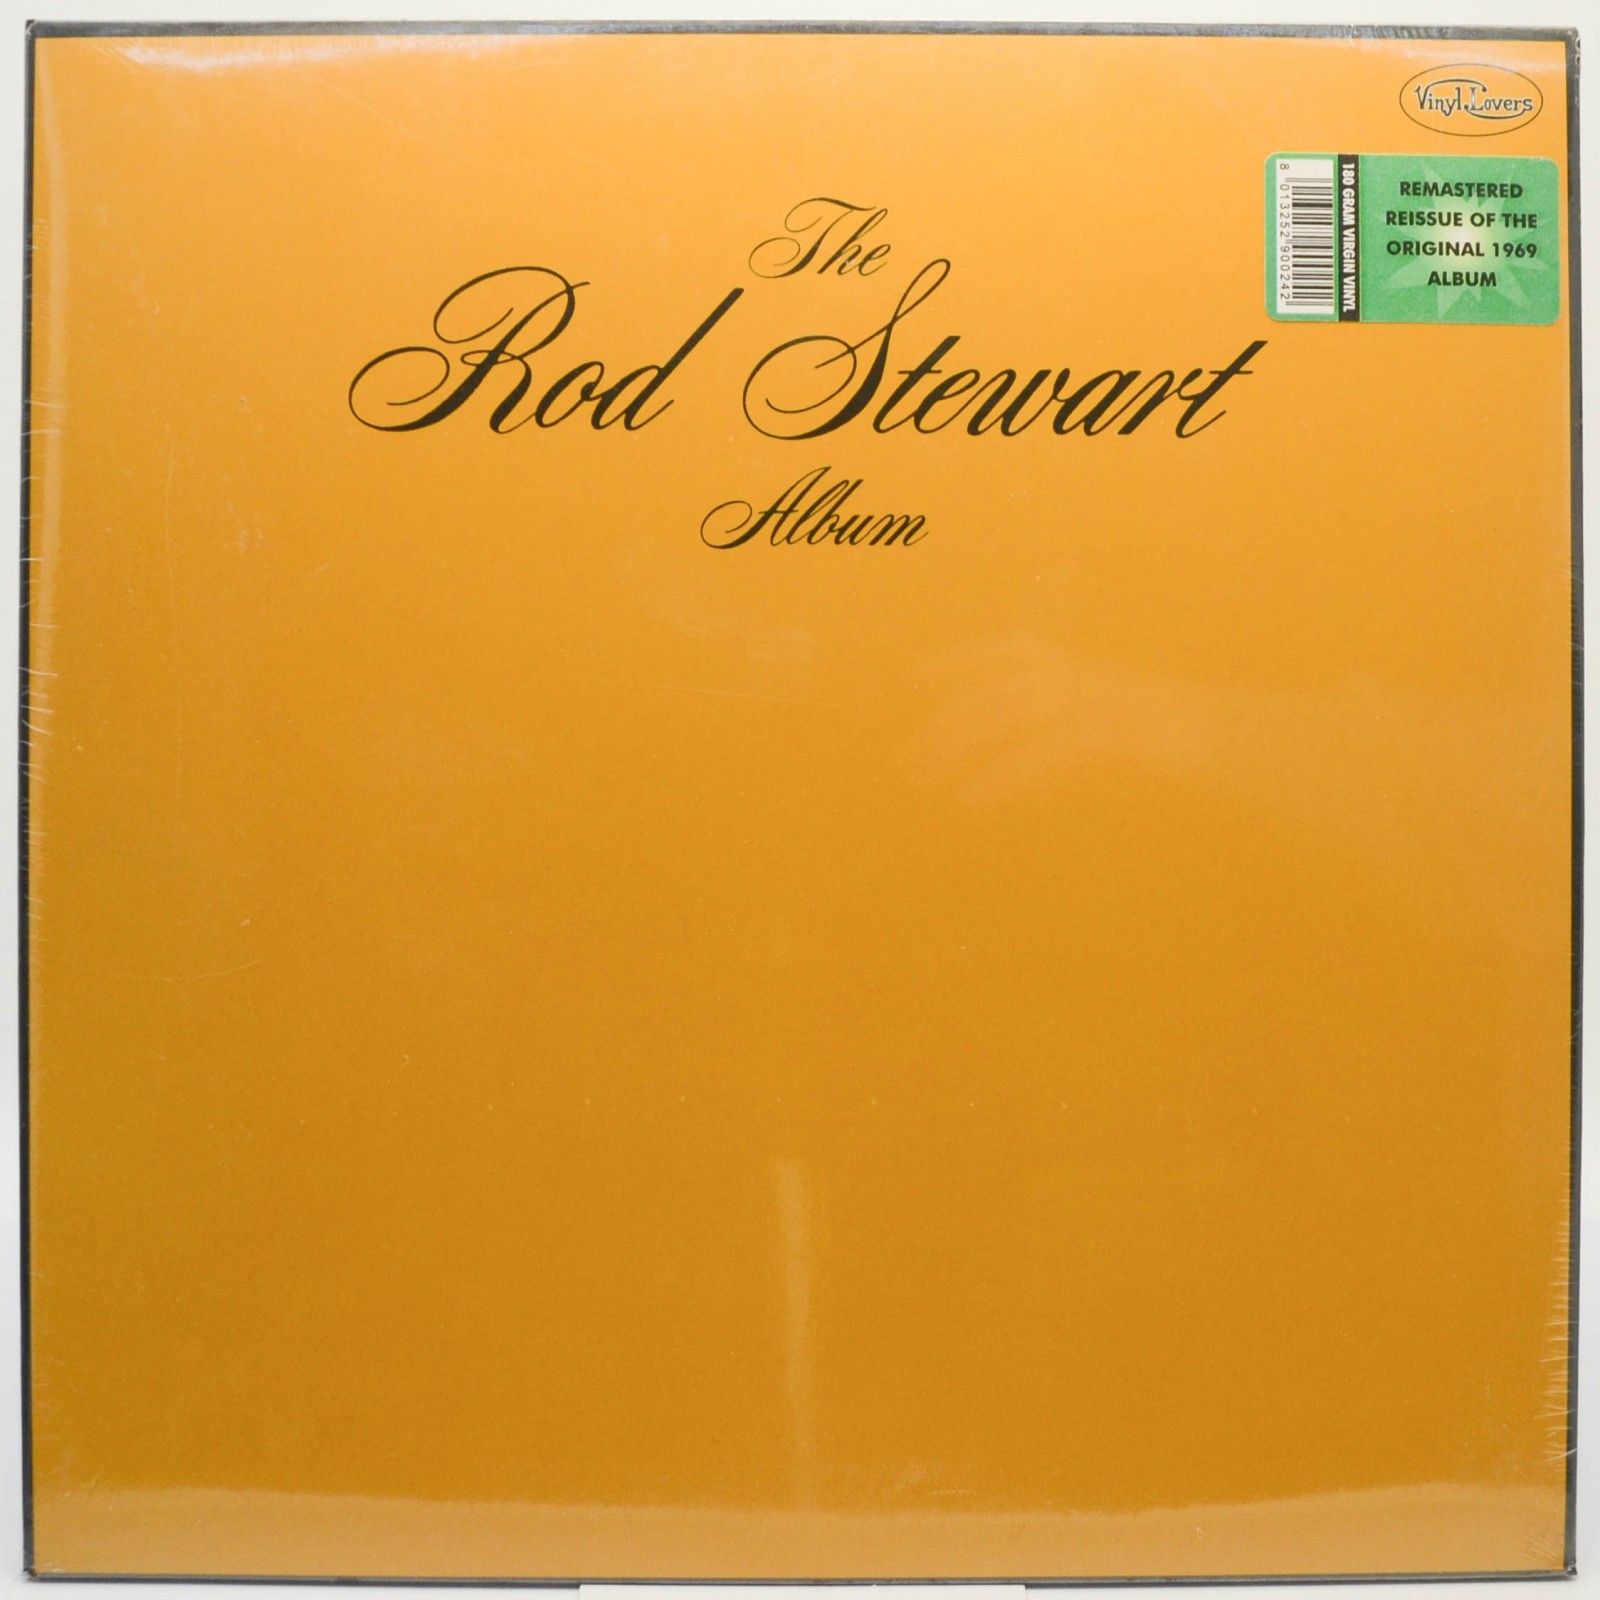 Rod Stewart — The Rod Stewart Album, 1969